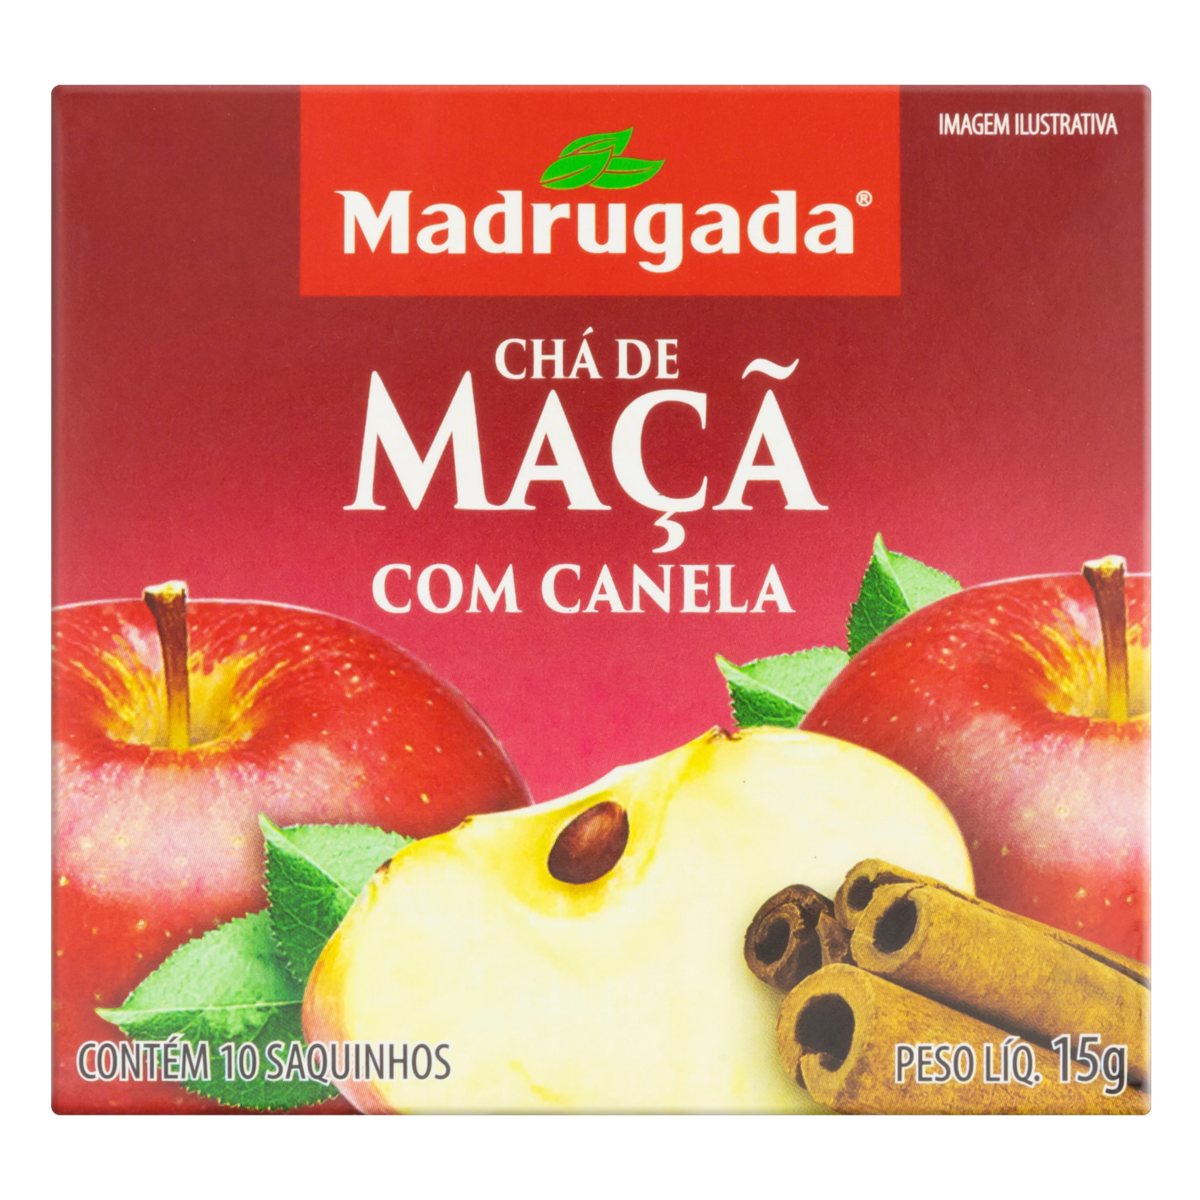 7896277200839 - CHÁ MAÇÃ COM CANELA MADRUGADA CAIXA 15G 10 UNIDADES